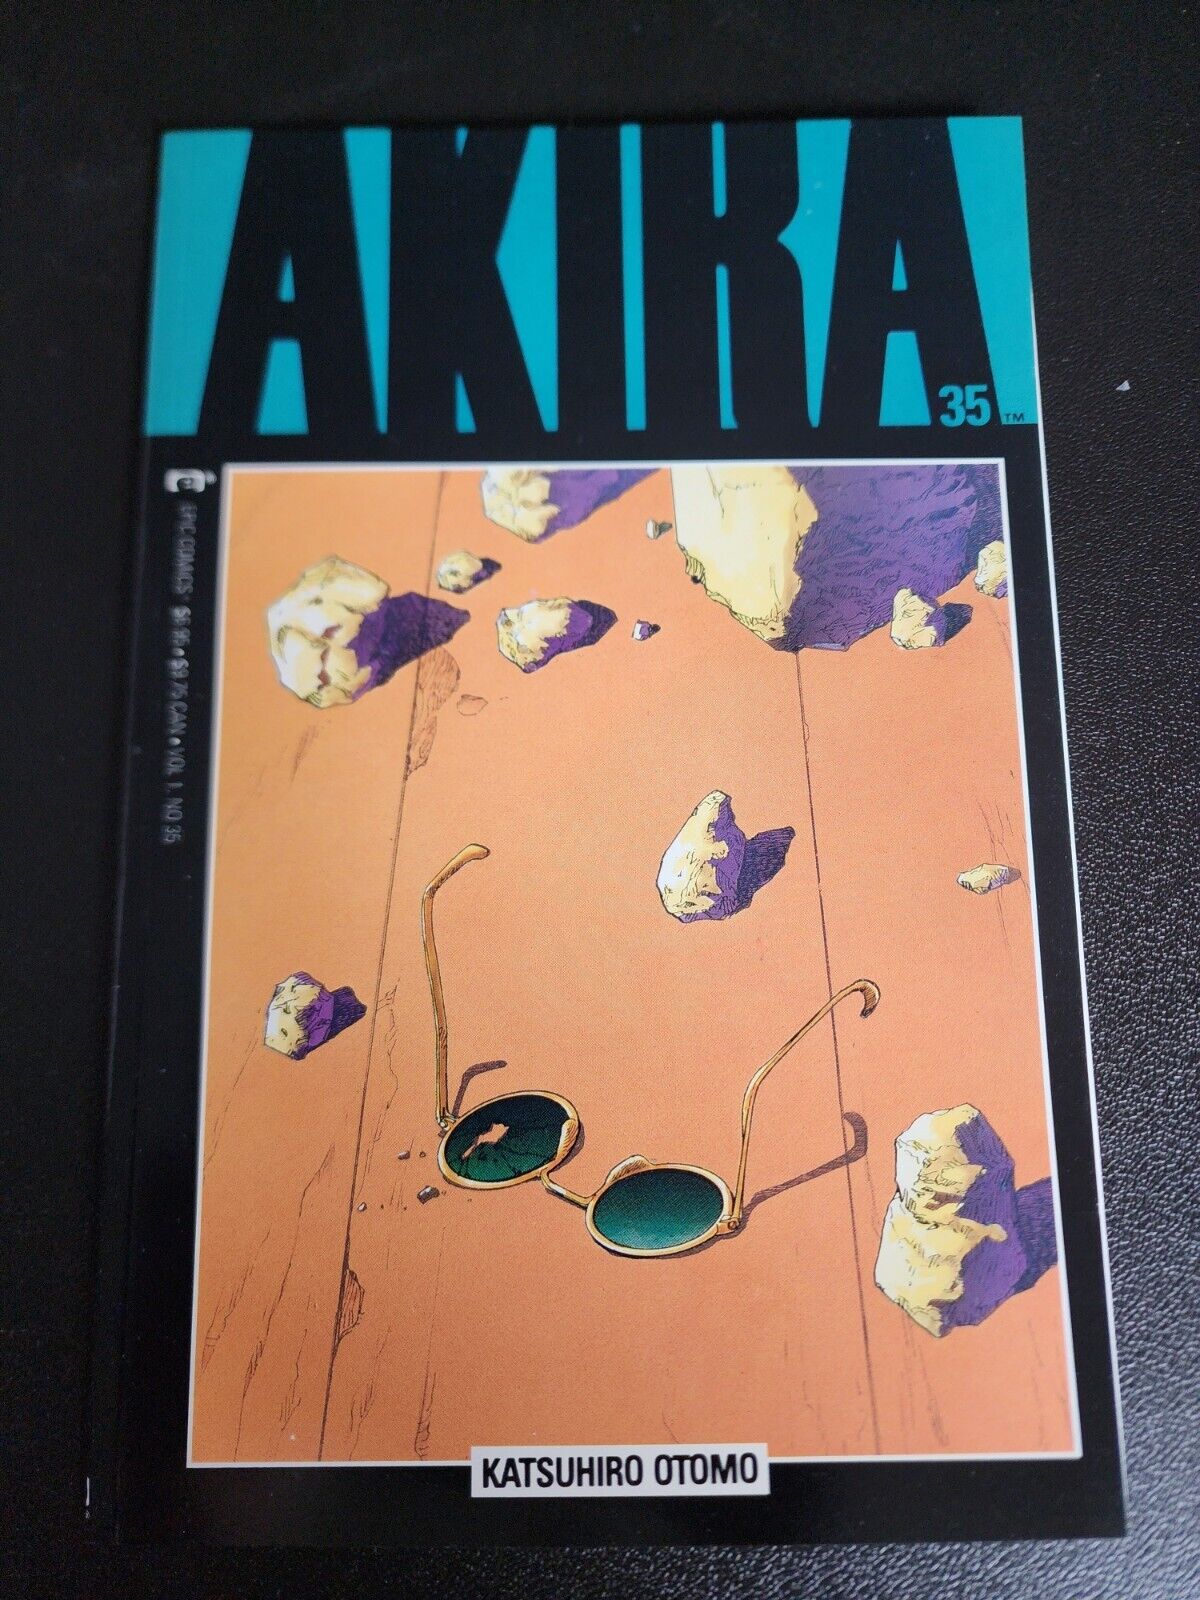 Akira #35 (Epic Comics 1991) - Katsuhiro Otomo - Very Low Print Run